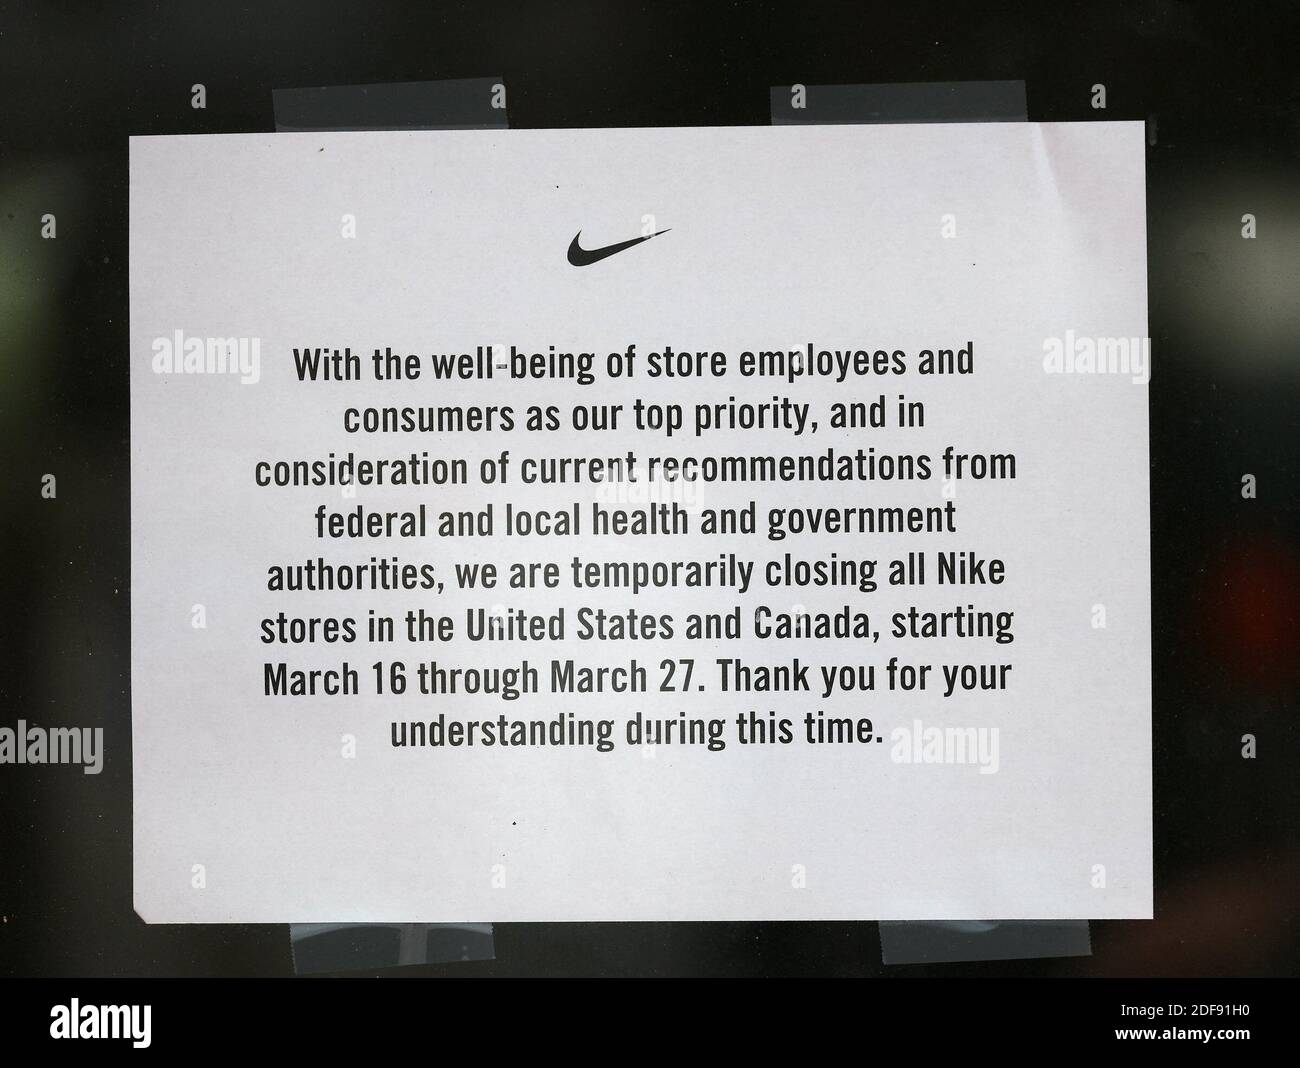 NINGUNA PELÍCULA, NINGÚN VIDEO, ninguna televisión, NINGÚN DOCUMENTAL - la  tienda Nike Lincoln Rd publica un aviso de cierre ya que las secuelas de  las políticas pandémicas de COVID-19 forzaron el cierre